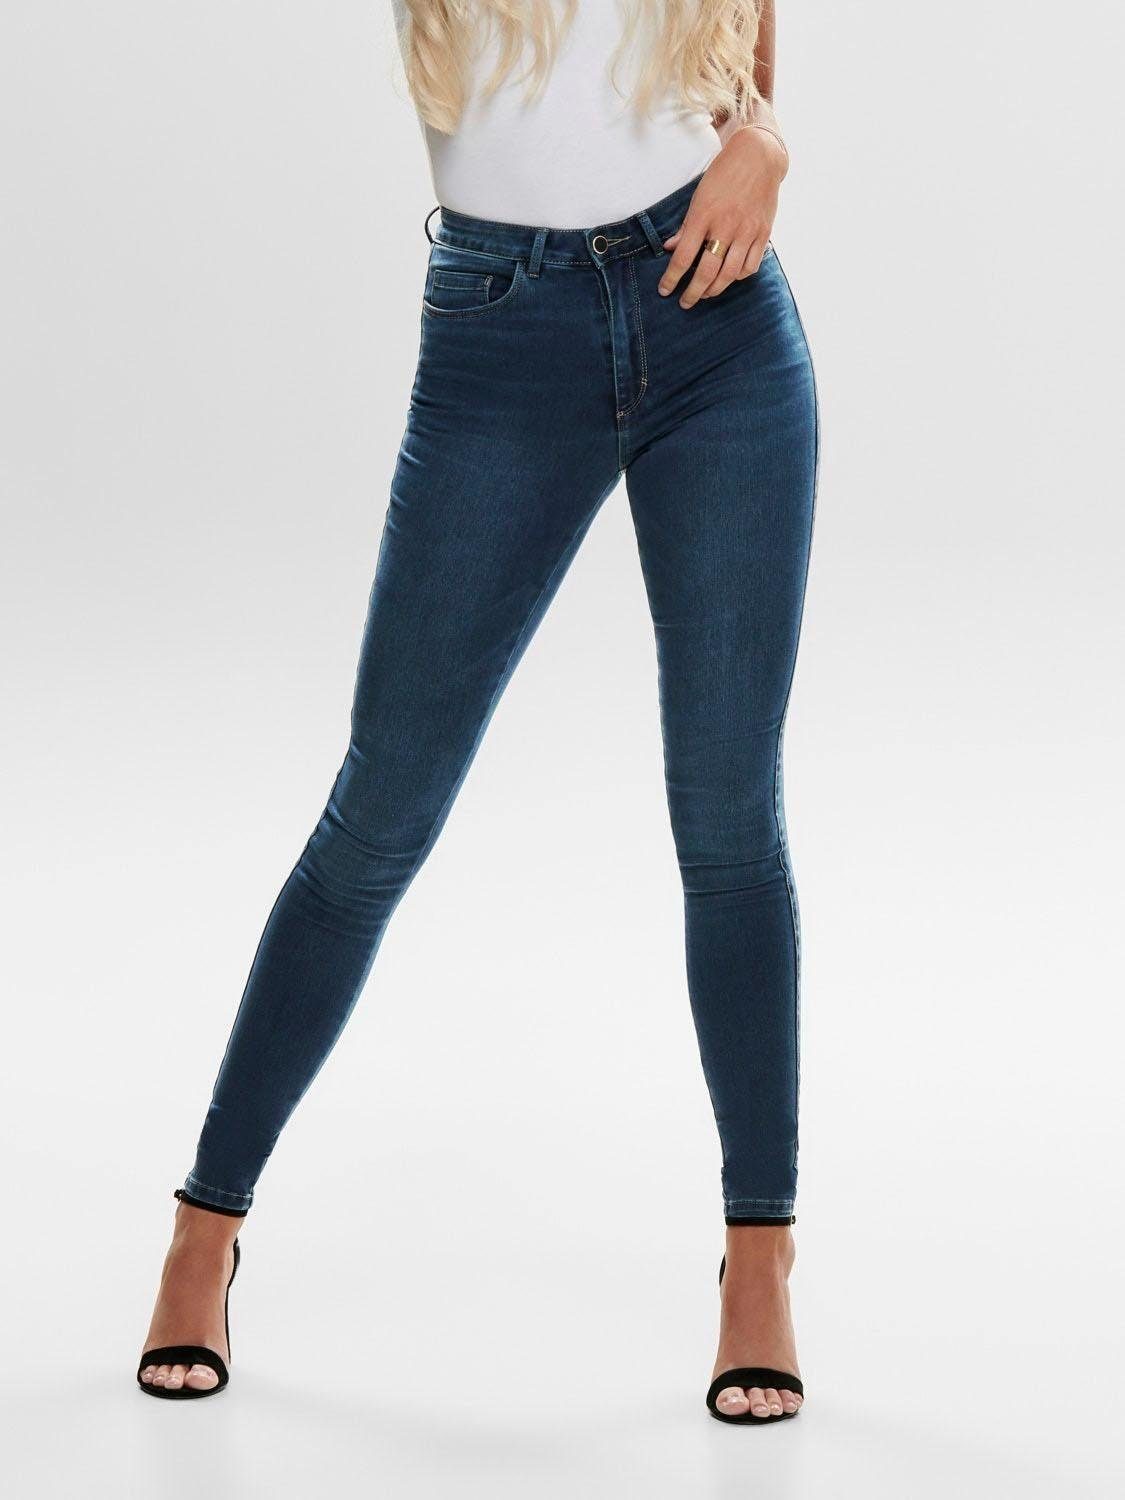 Günstige Only Jeans für Damen kaufen » Only Jeans SALE | OTTO